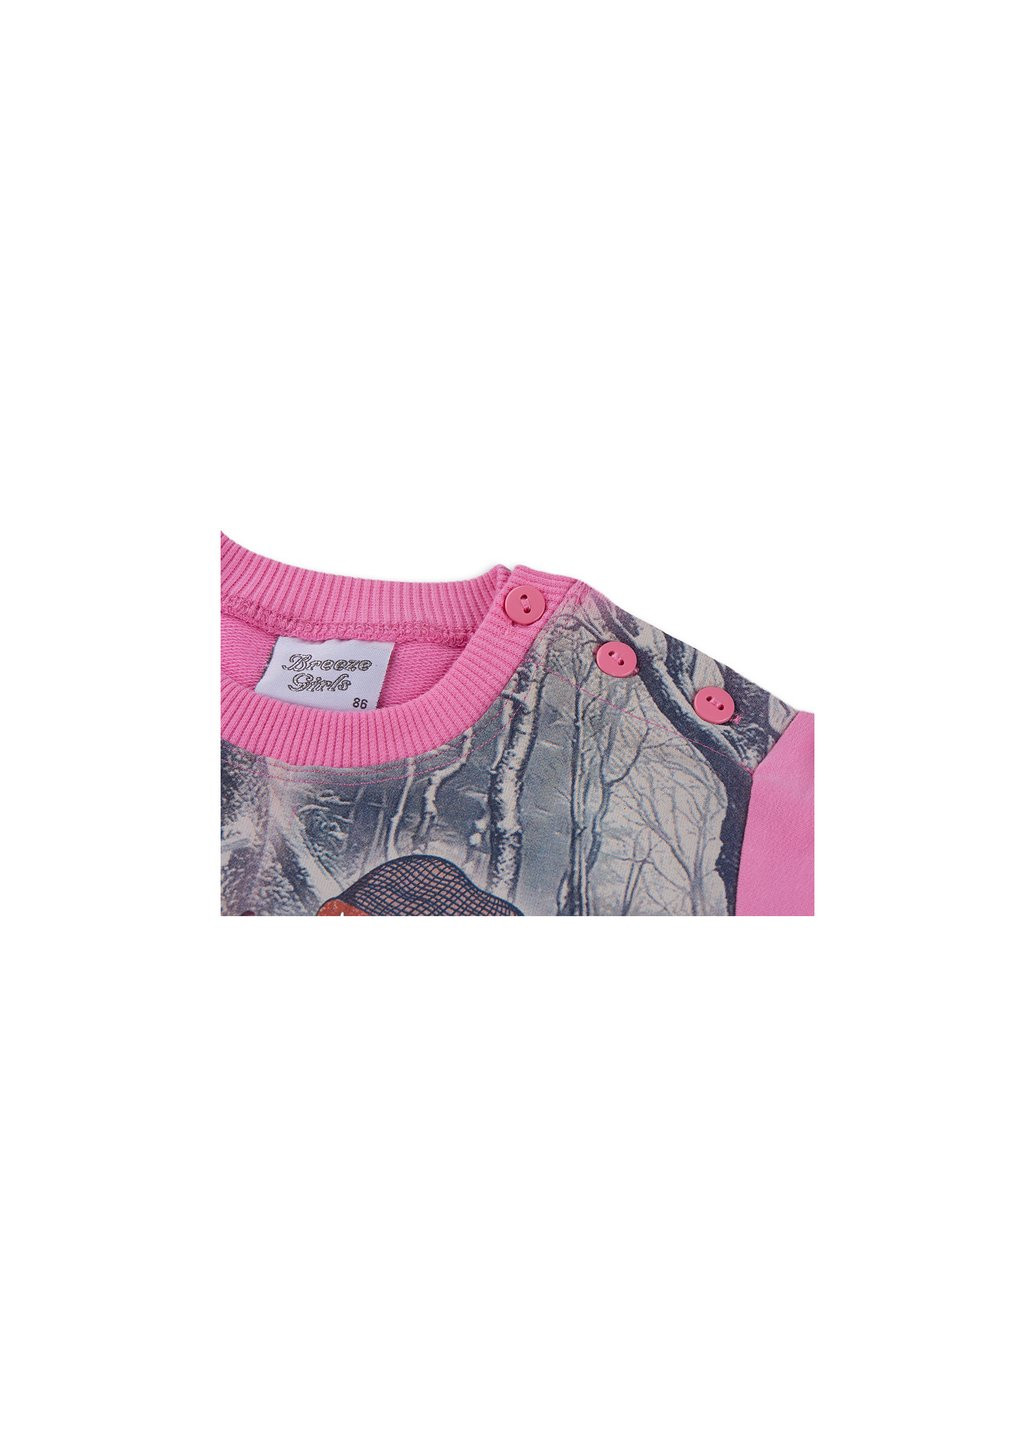 Комбинированный демисезонный набор детской одежды с девочкой и штанишками в цветочек (8075-80/g-pink) Breeze